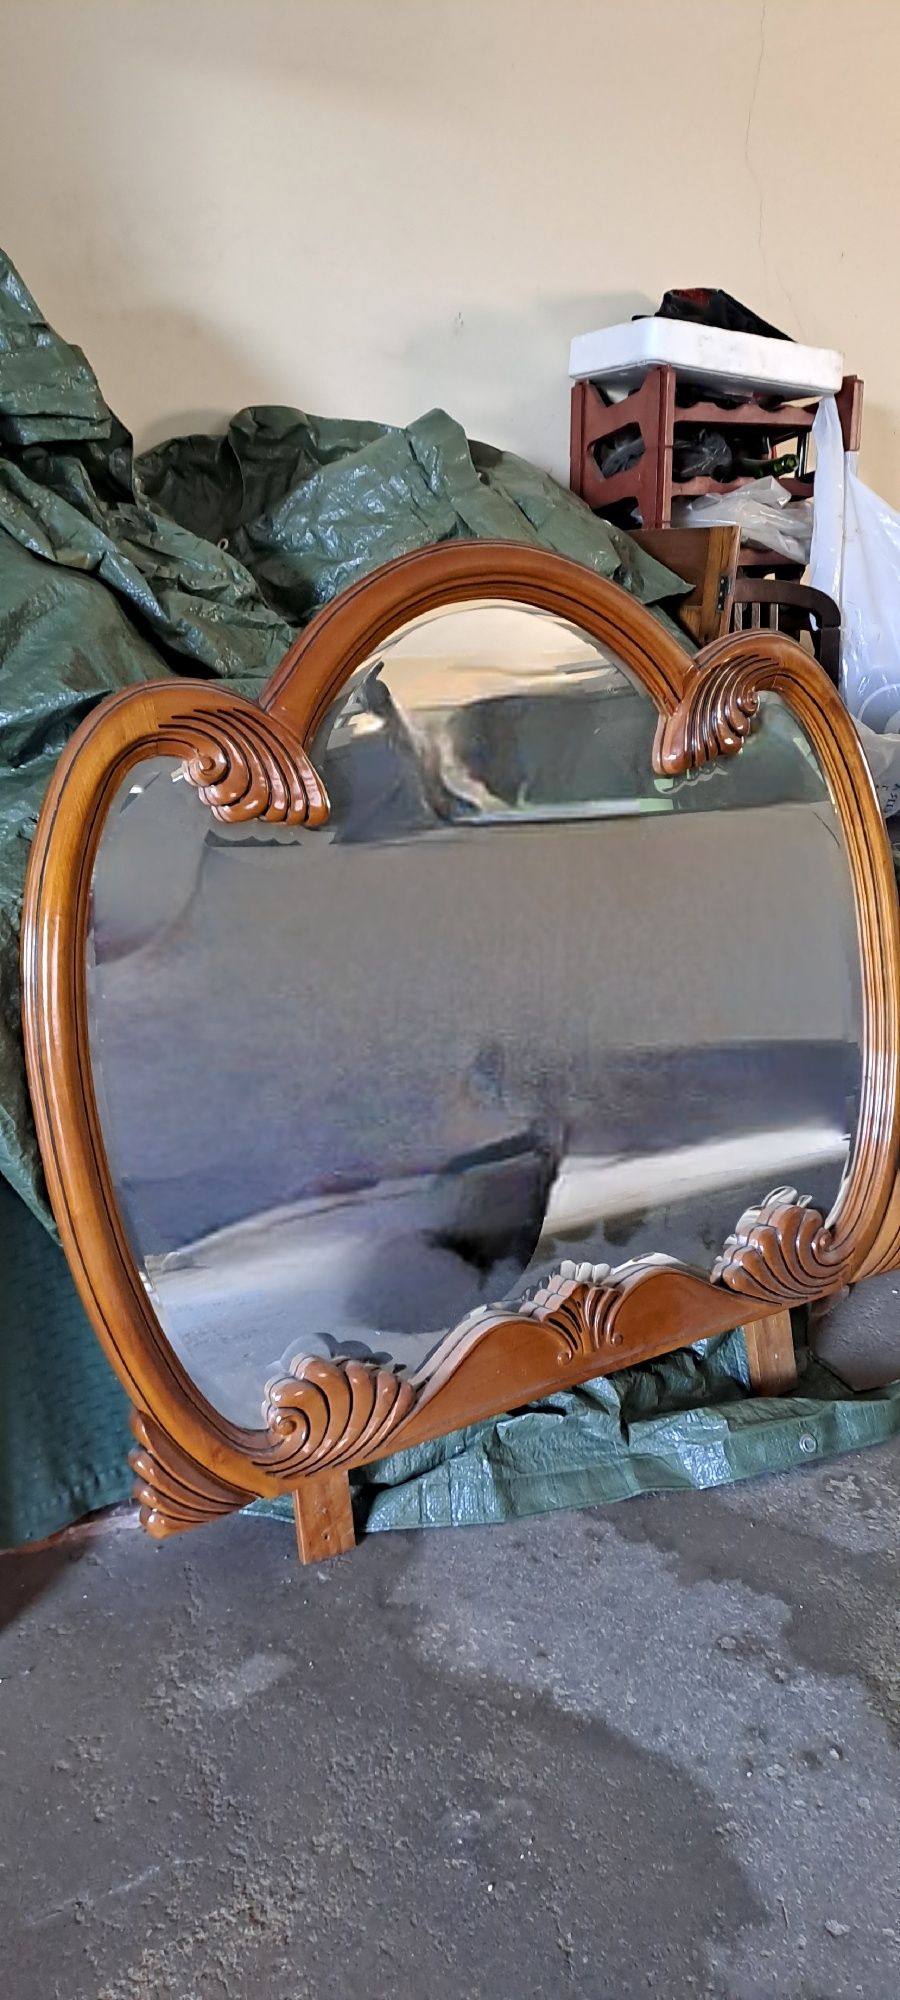 Espelho de quarto